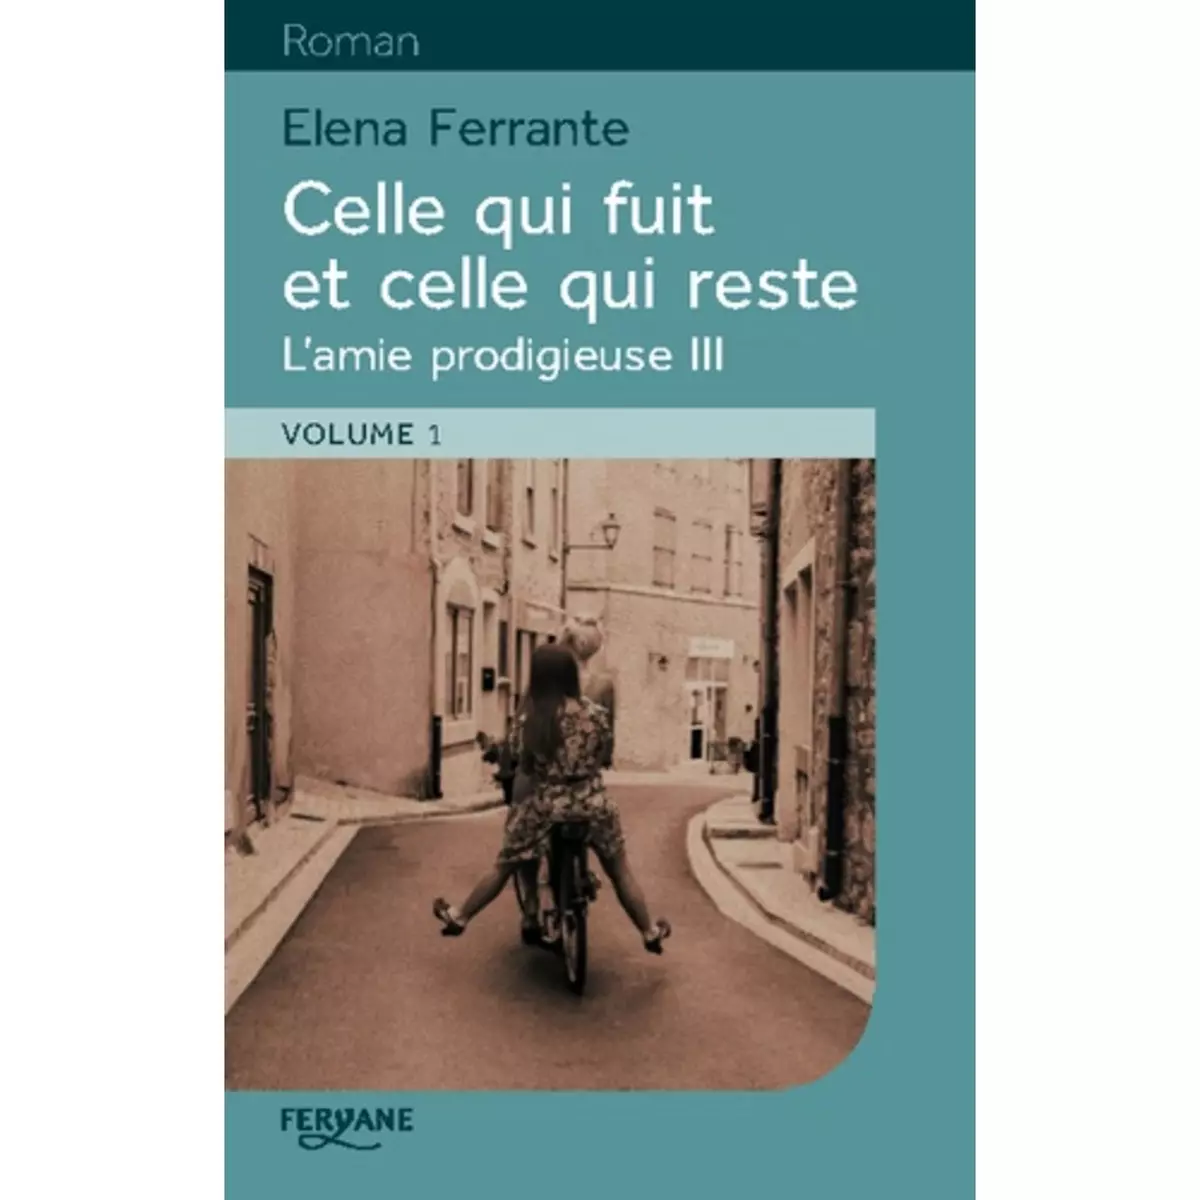  L'AMIE PRODIGIEUSE TOME 3 : CELLE QUI FUIT ET CELLE QUI RESTE. 2 VOLUMES [EDITION EN GROS CARACTERES], Ferrante Elena